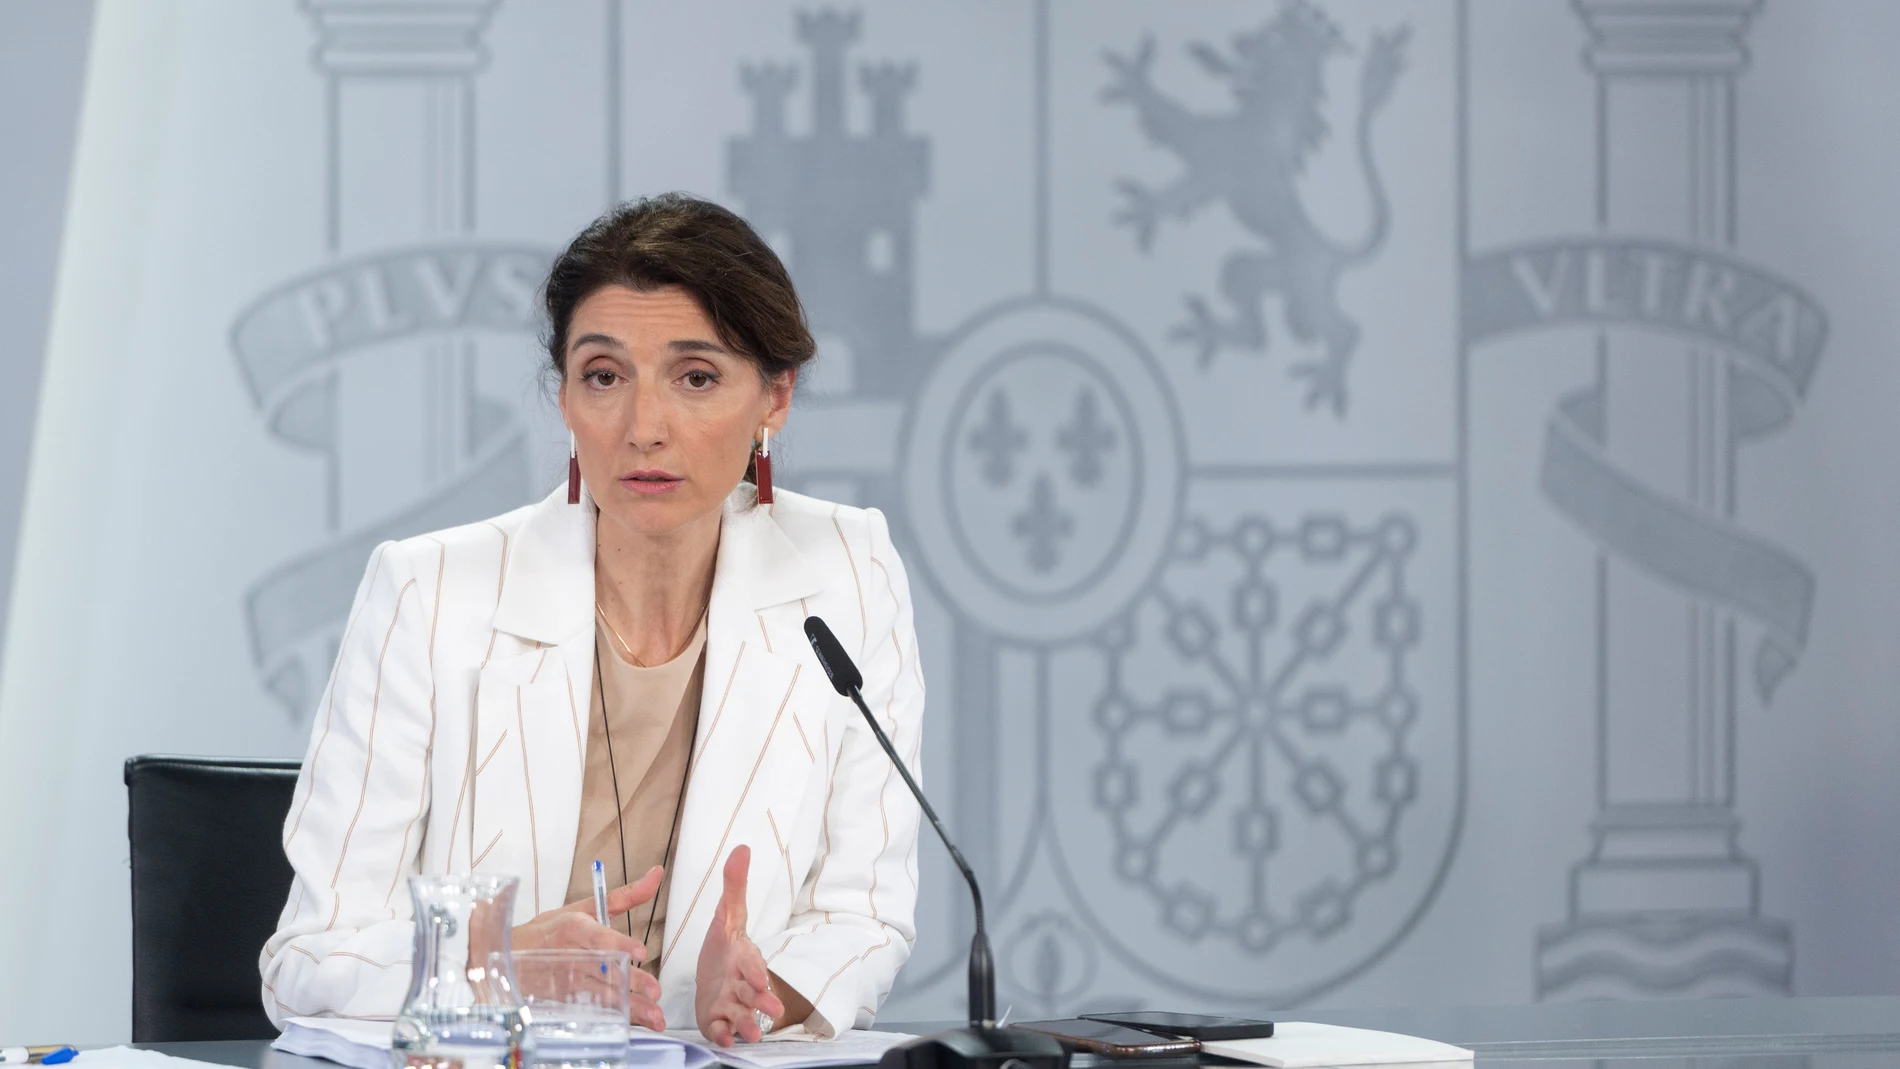 La ministra de Justicia, Pilar Llop